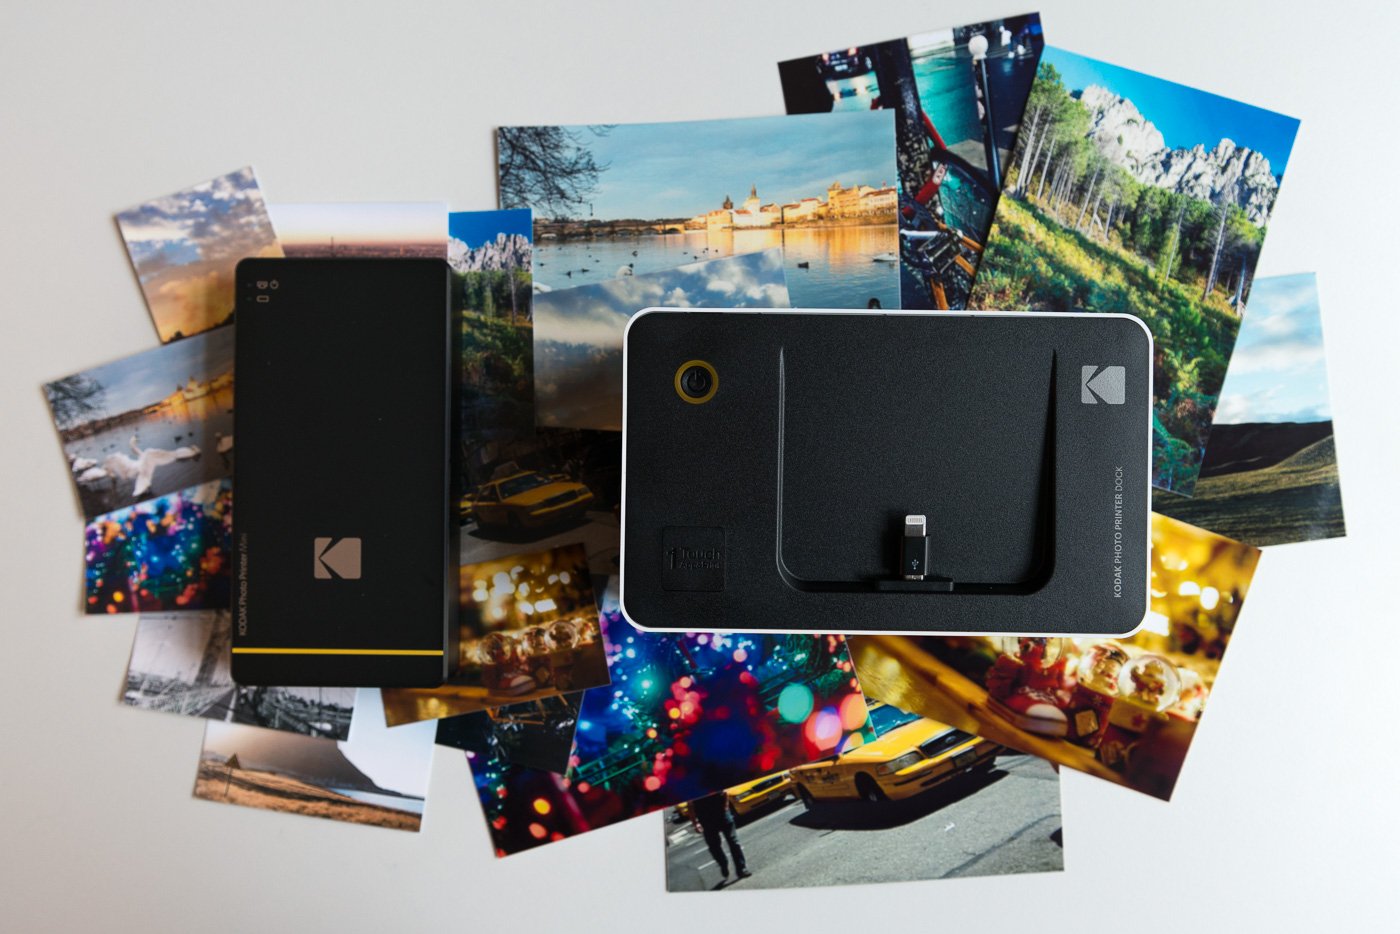 Imprimante photo portable Kodak Mini Black - Imprimante photo - Achat &  prix